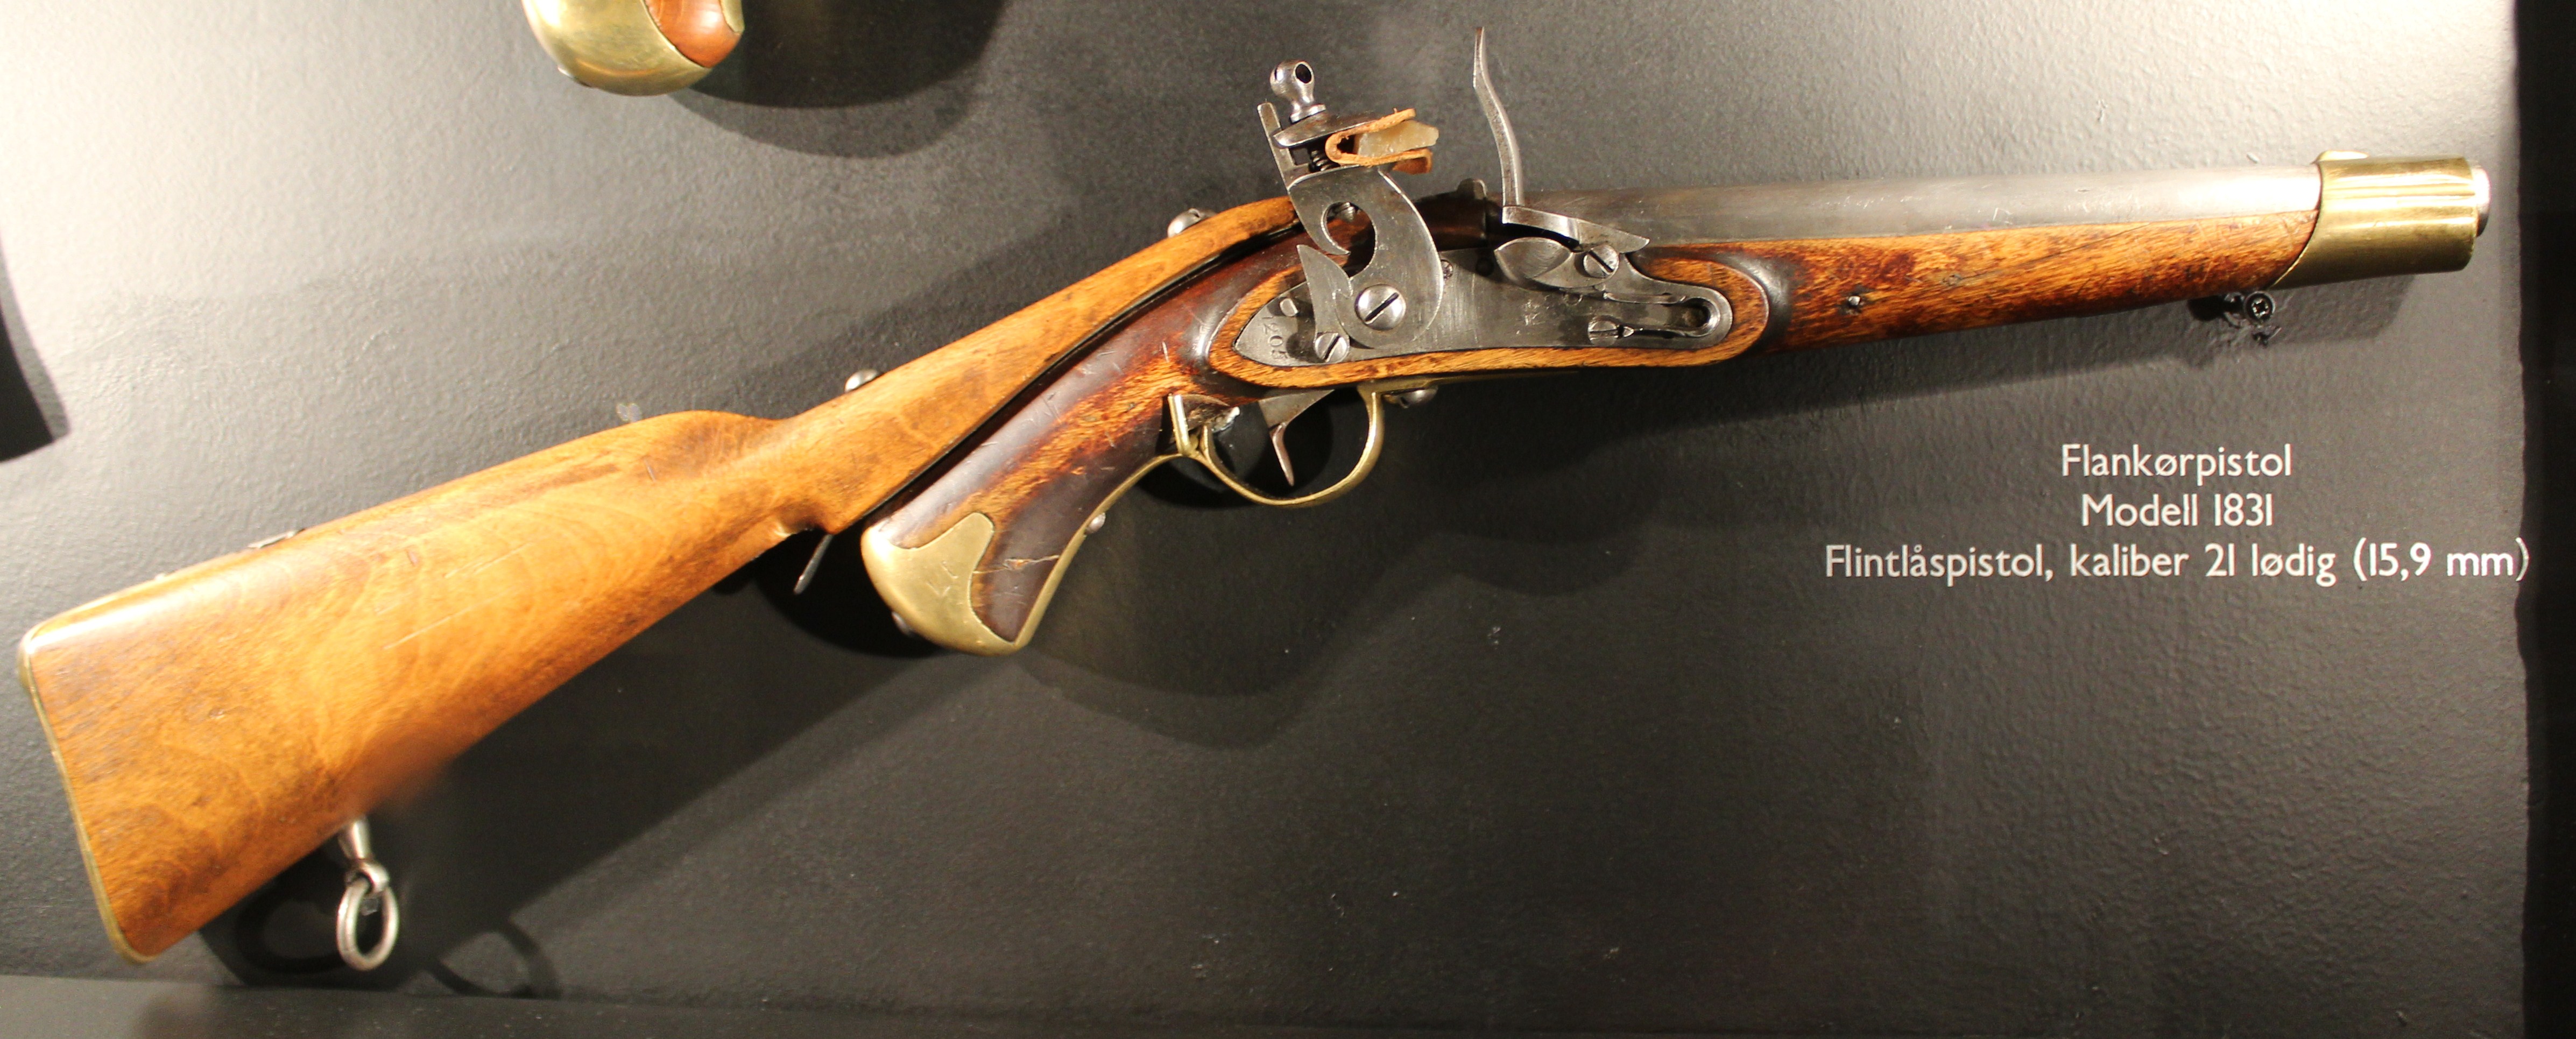 ./guns/pistol/bilder/Pistol-Kongsberg-M1831-1205-Flankor-1.jpg